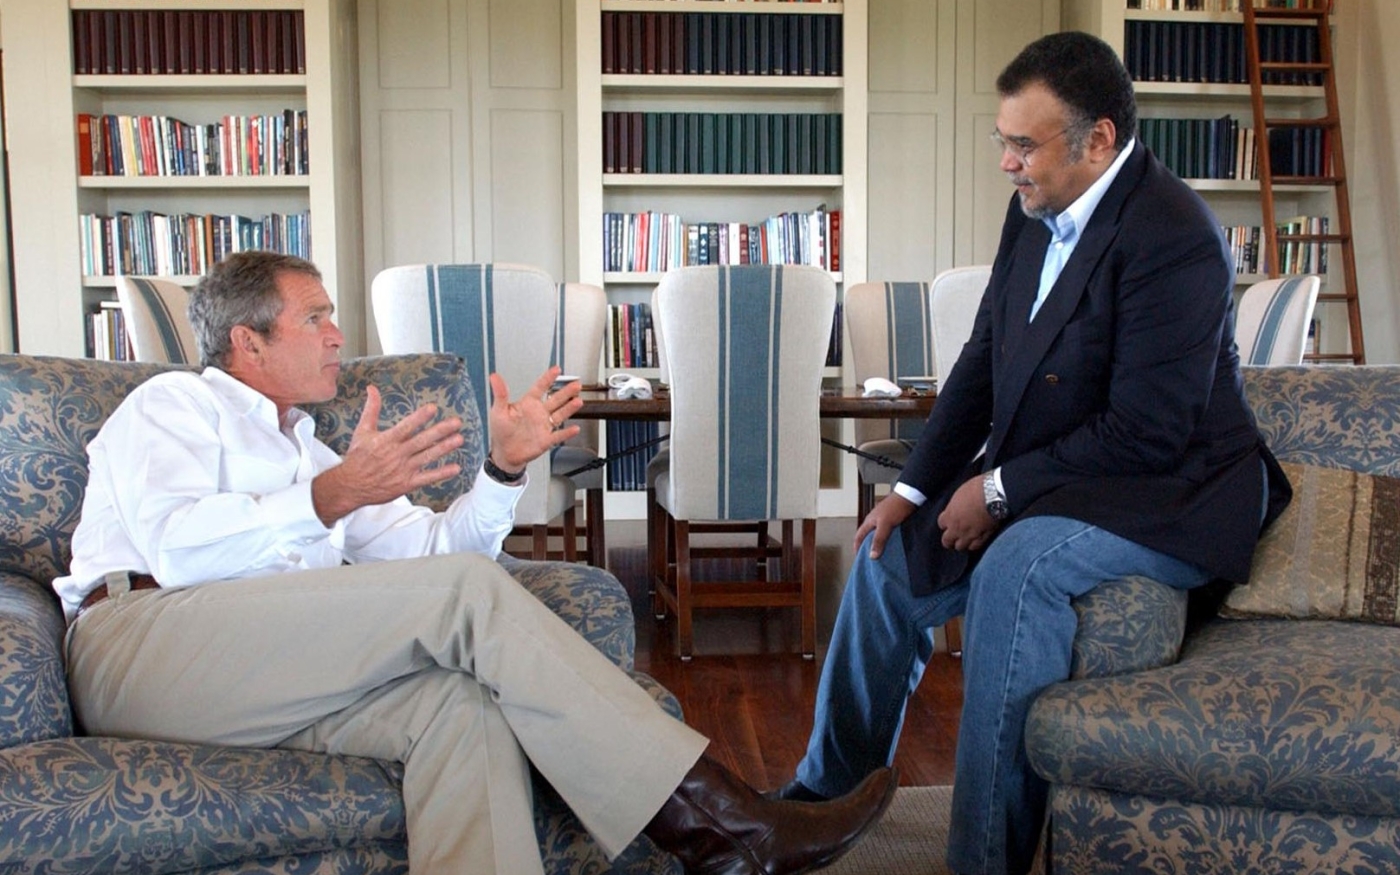 Le président américain George W. Bush (à gauche) rencontre l’ambassadeur d’Arabie saoudite aux États-Unis, le prince Bandar ben Sultan, dans le ranch Bush au Texas, le 27 août 2002 (AFP)